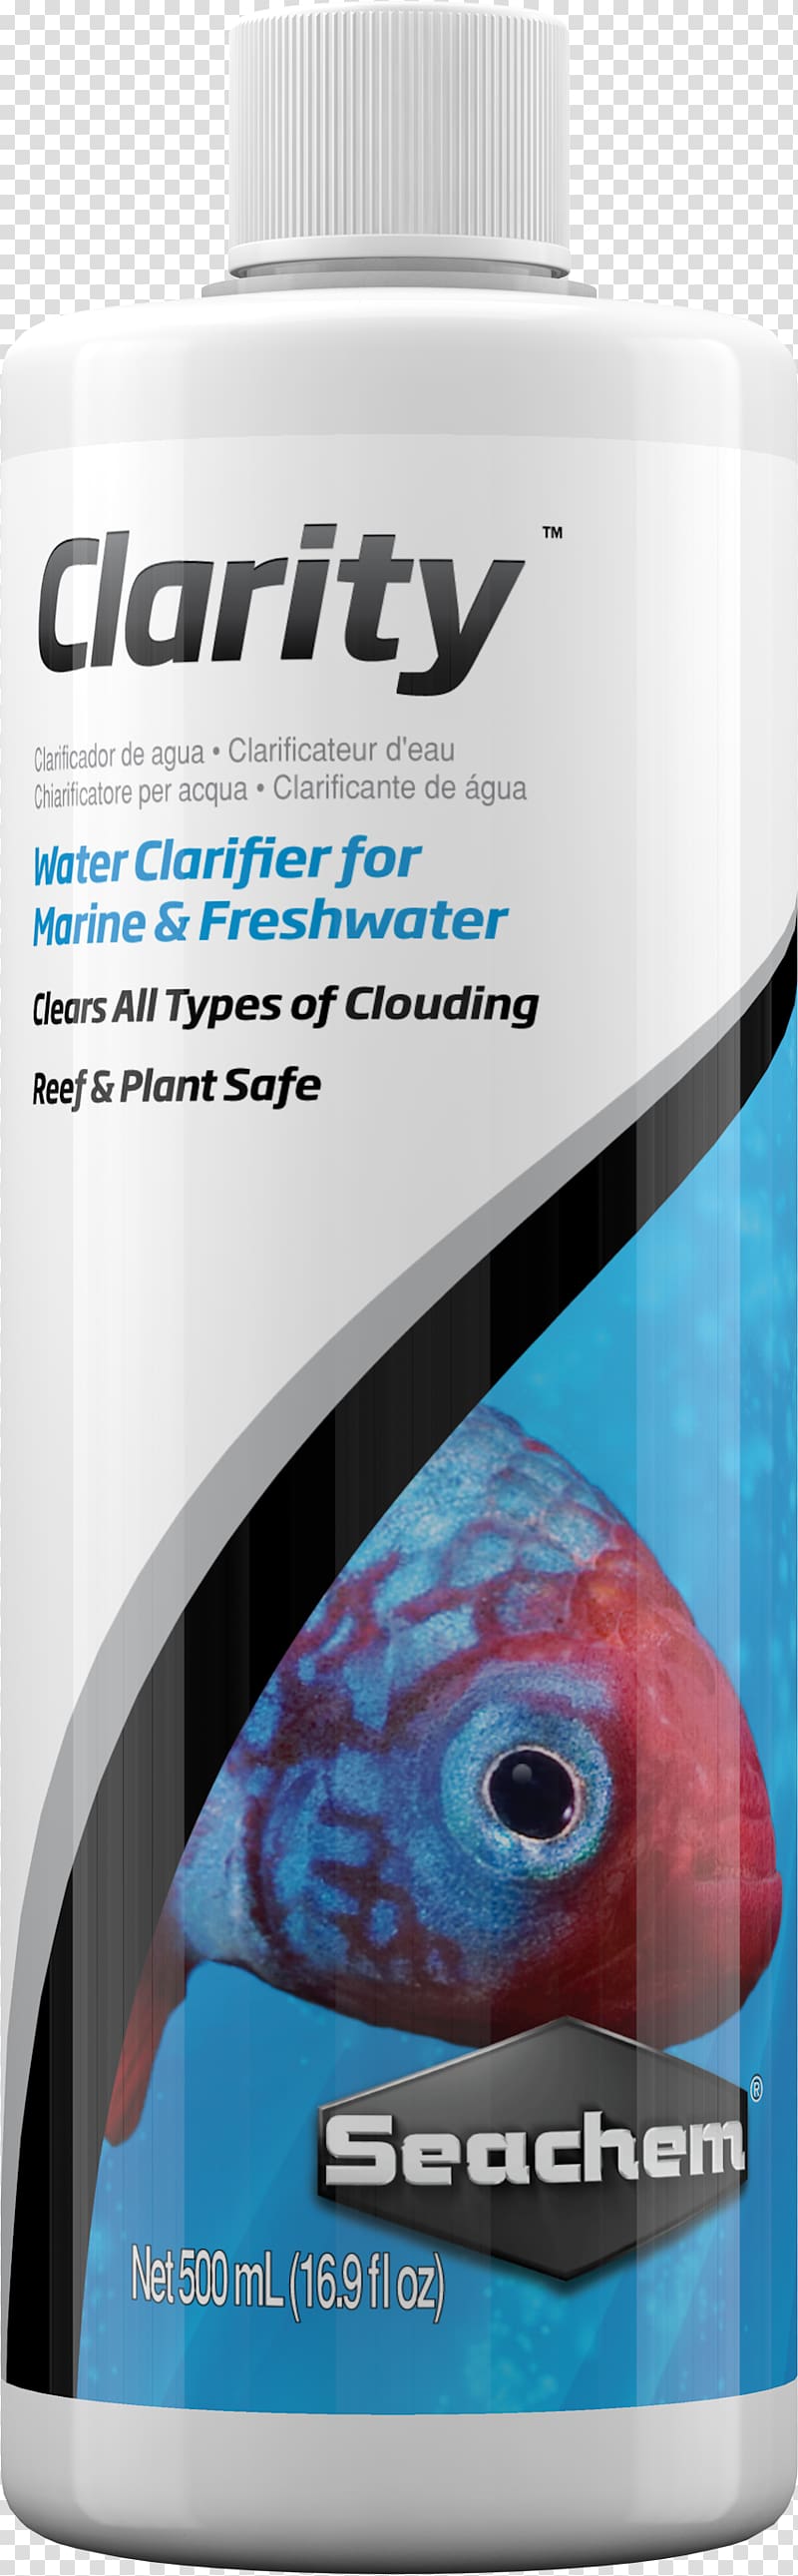 Amazon.com Clarifier Milliliter Aquarium Seawater, others transparent background PNG clipart